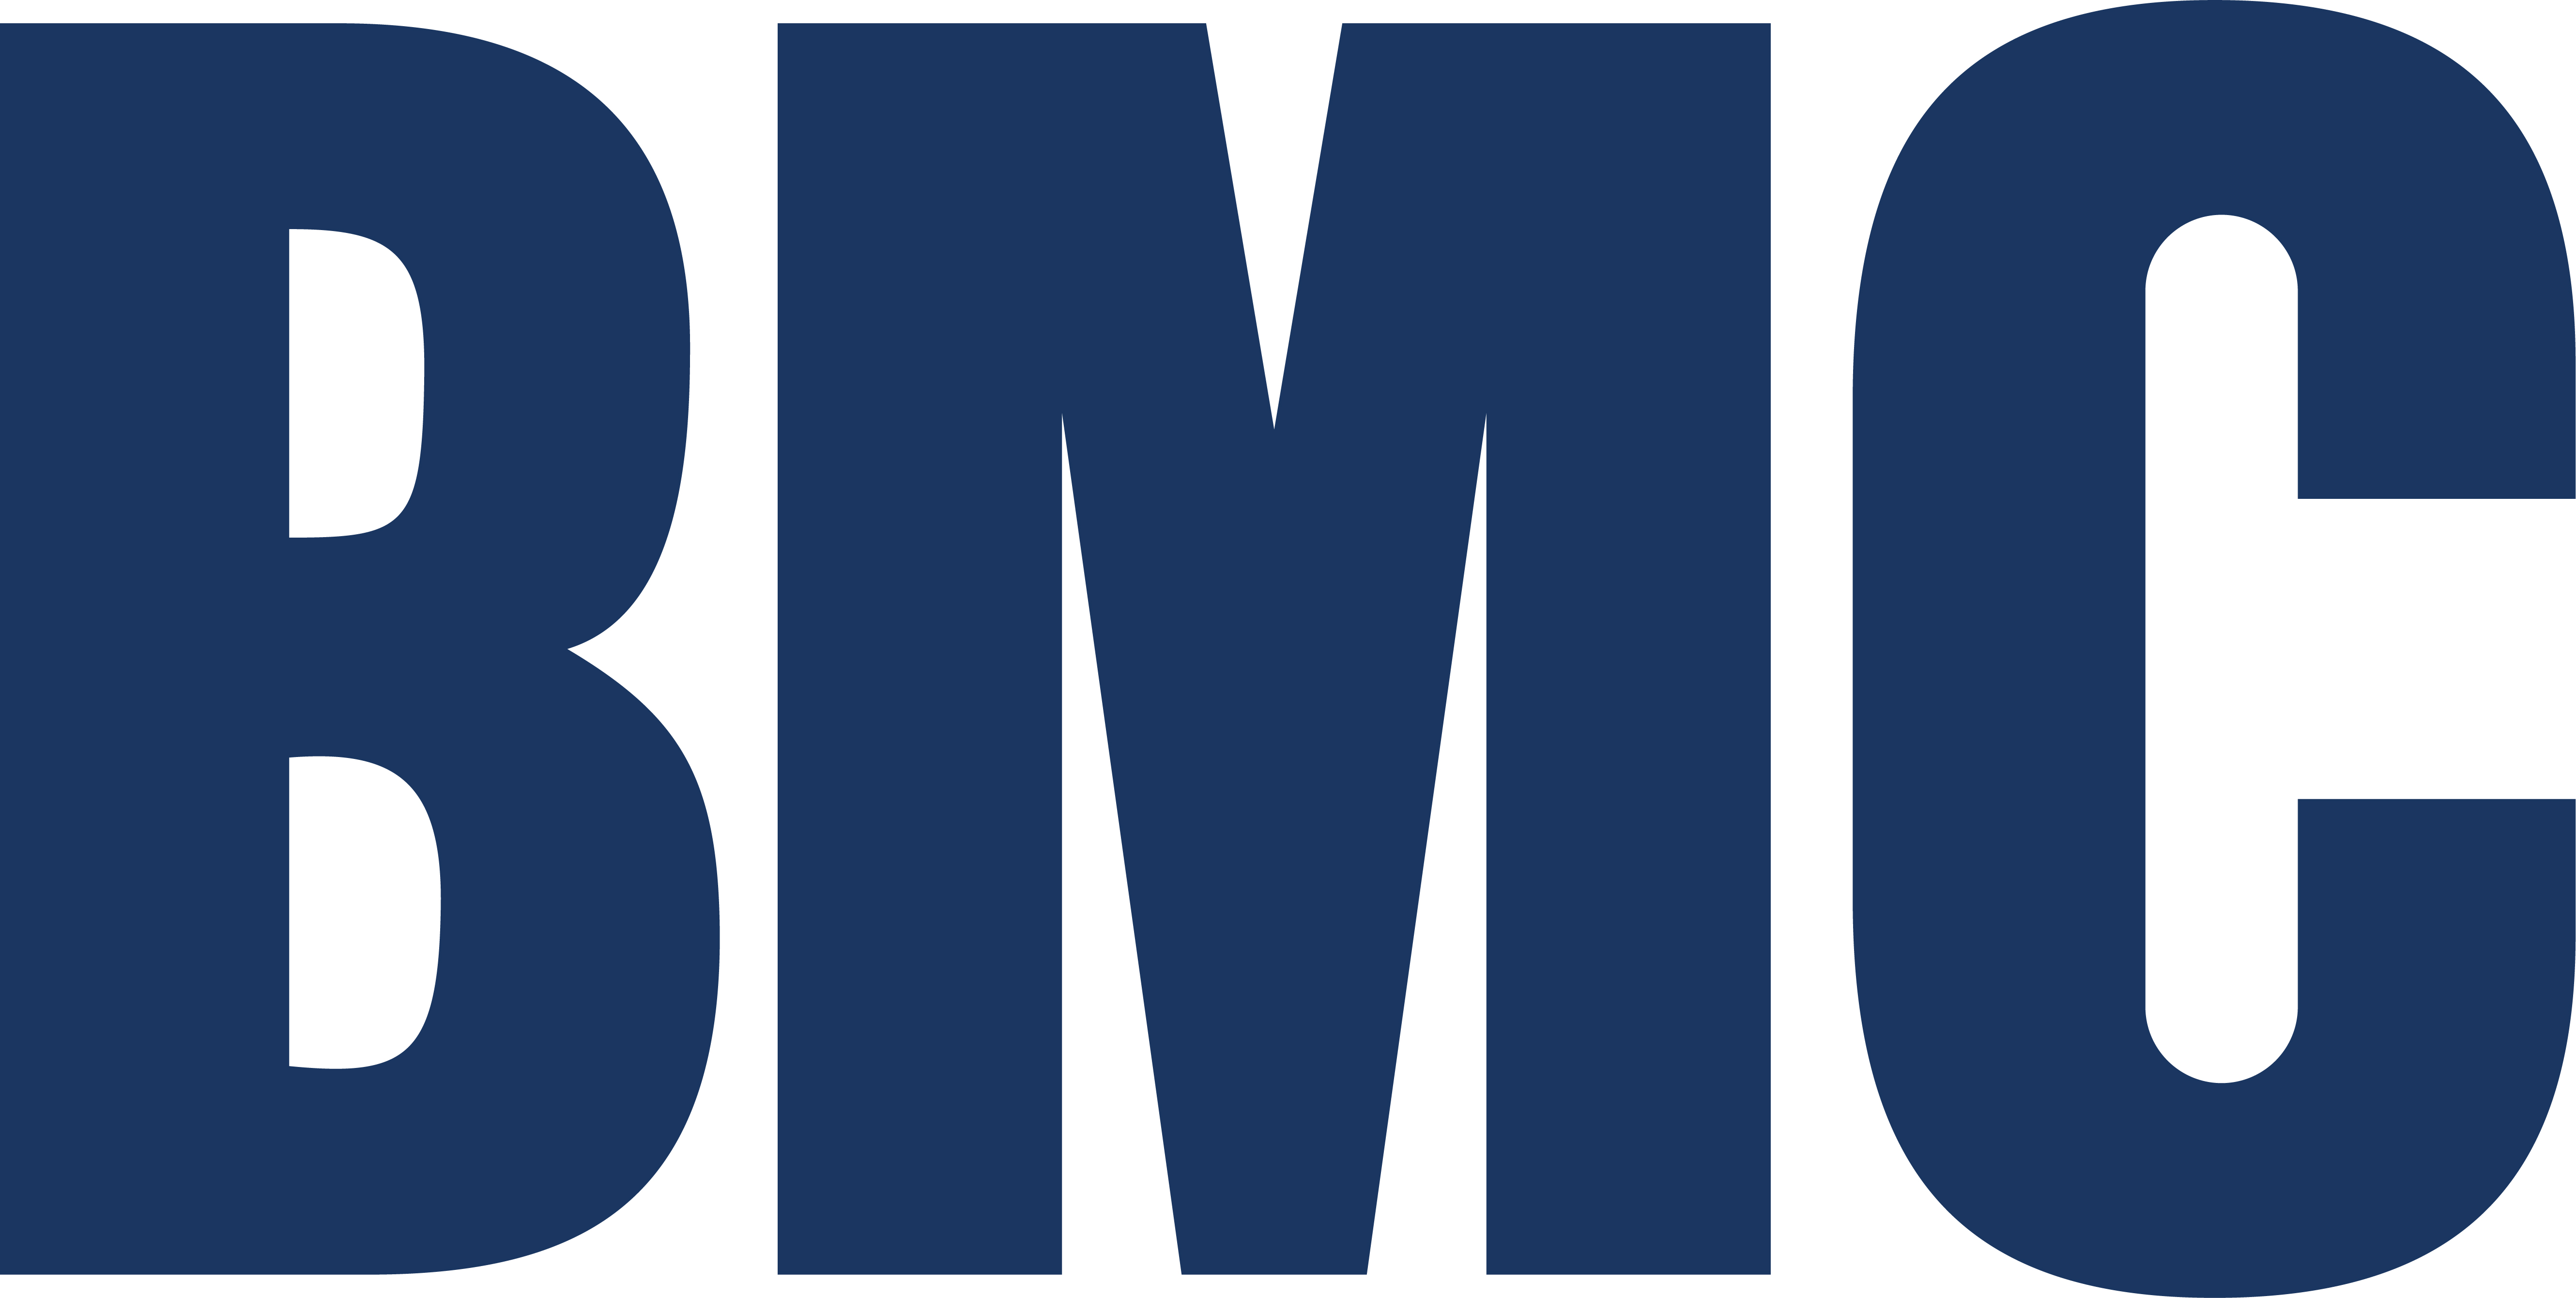 BMC - BMC